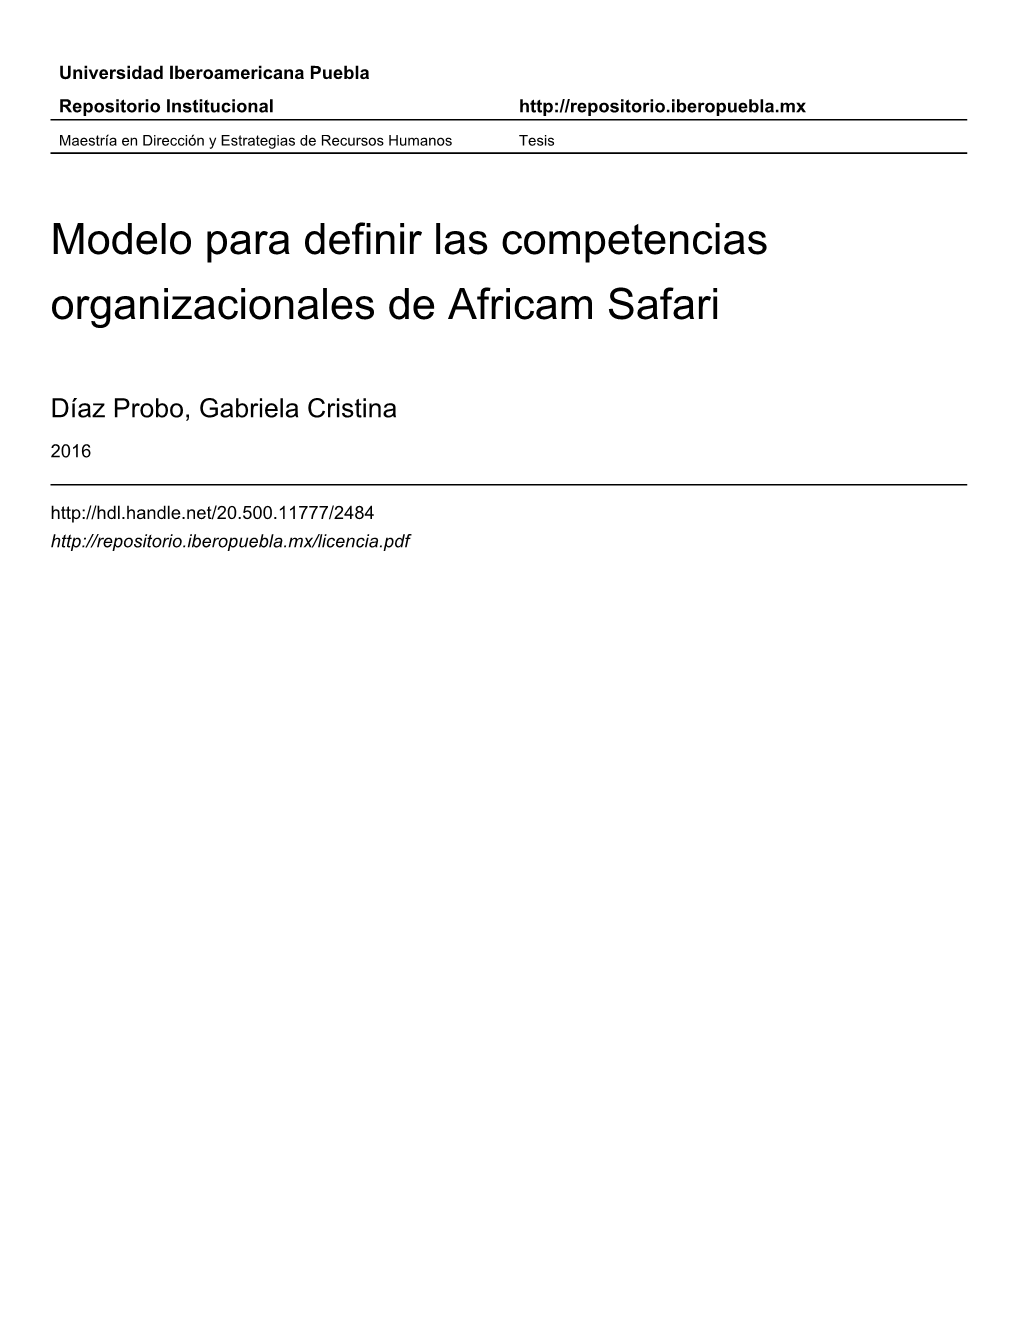 Modelo Para Definir Las Competencias Organizacionales De Africam Safari